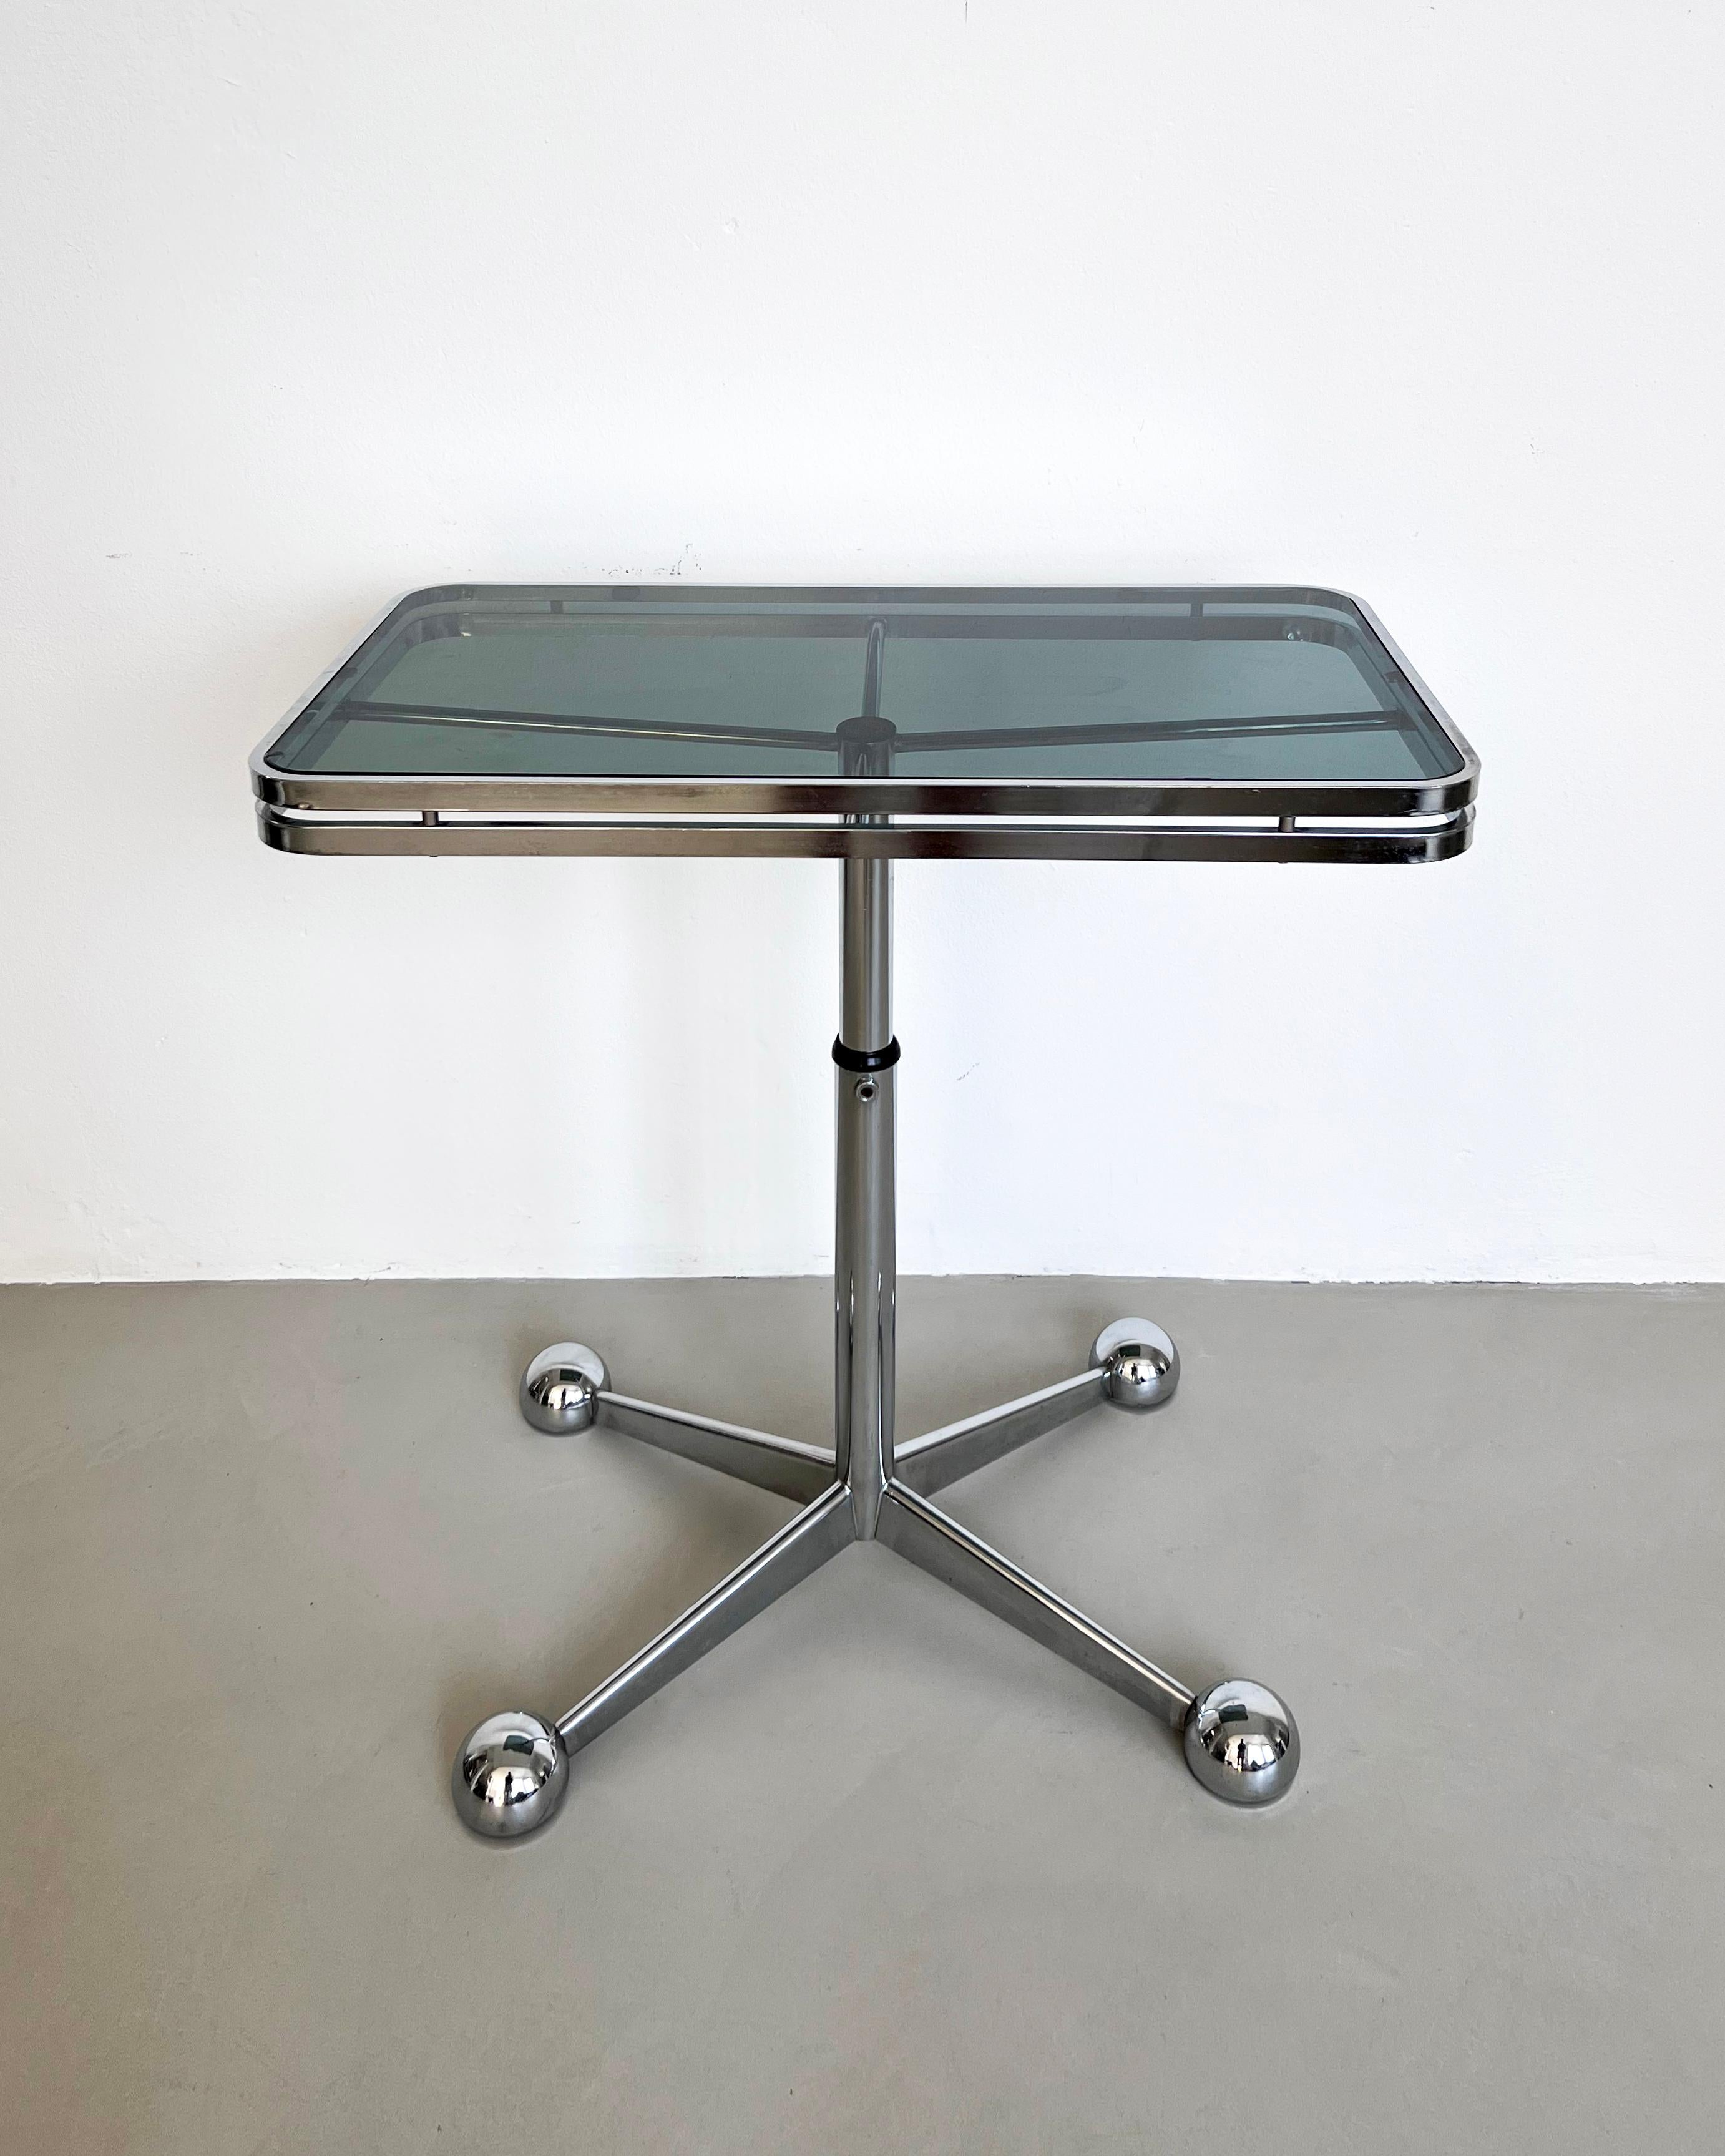 Table télescopique réglable vintage en métal chromé et verre fumé, fabriquée en Italie dans les années 1970, période/style Space AGE.

Labellisée par le célèbre fabricant de meubles Allegri, basé à Parma, dans le nord de l'Italie, cette table était